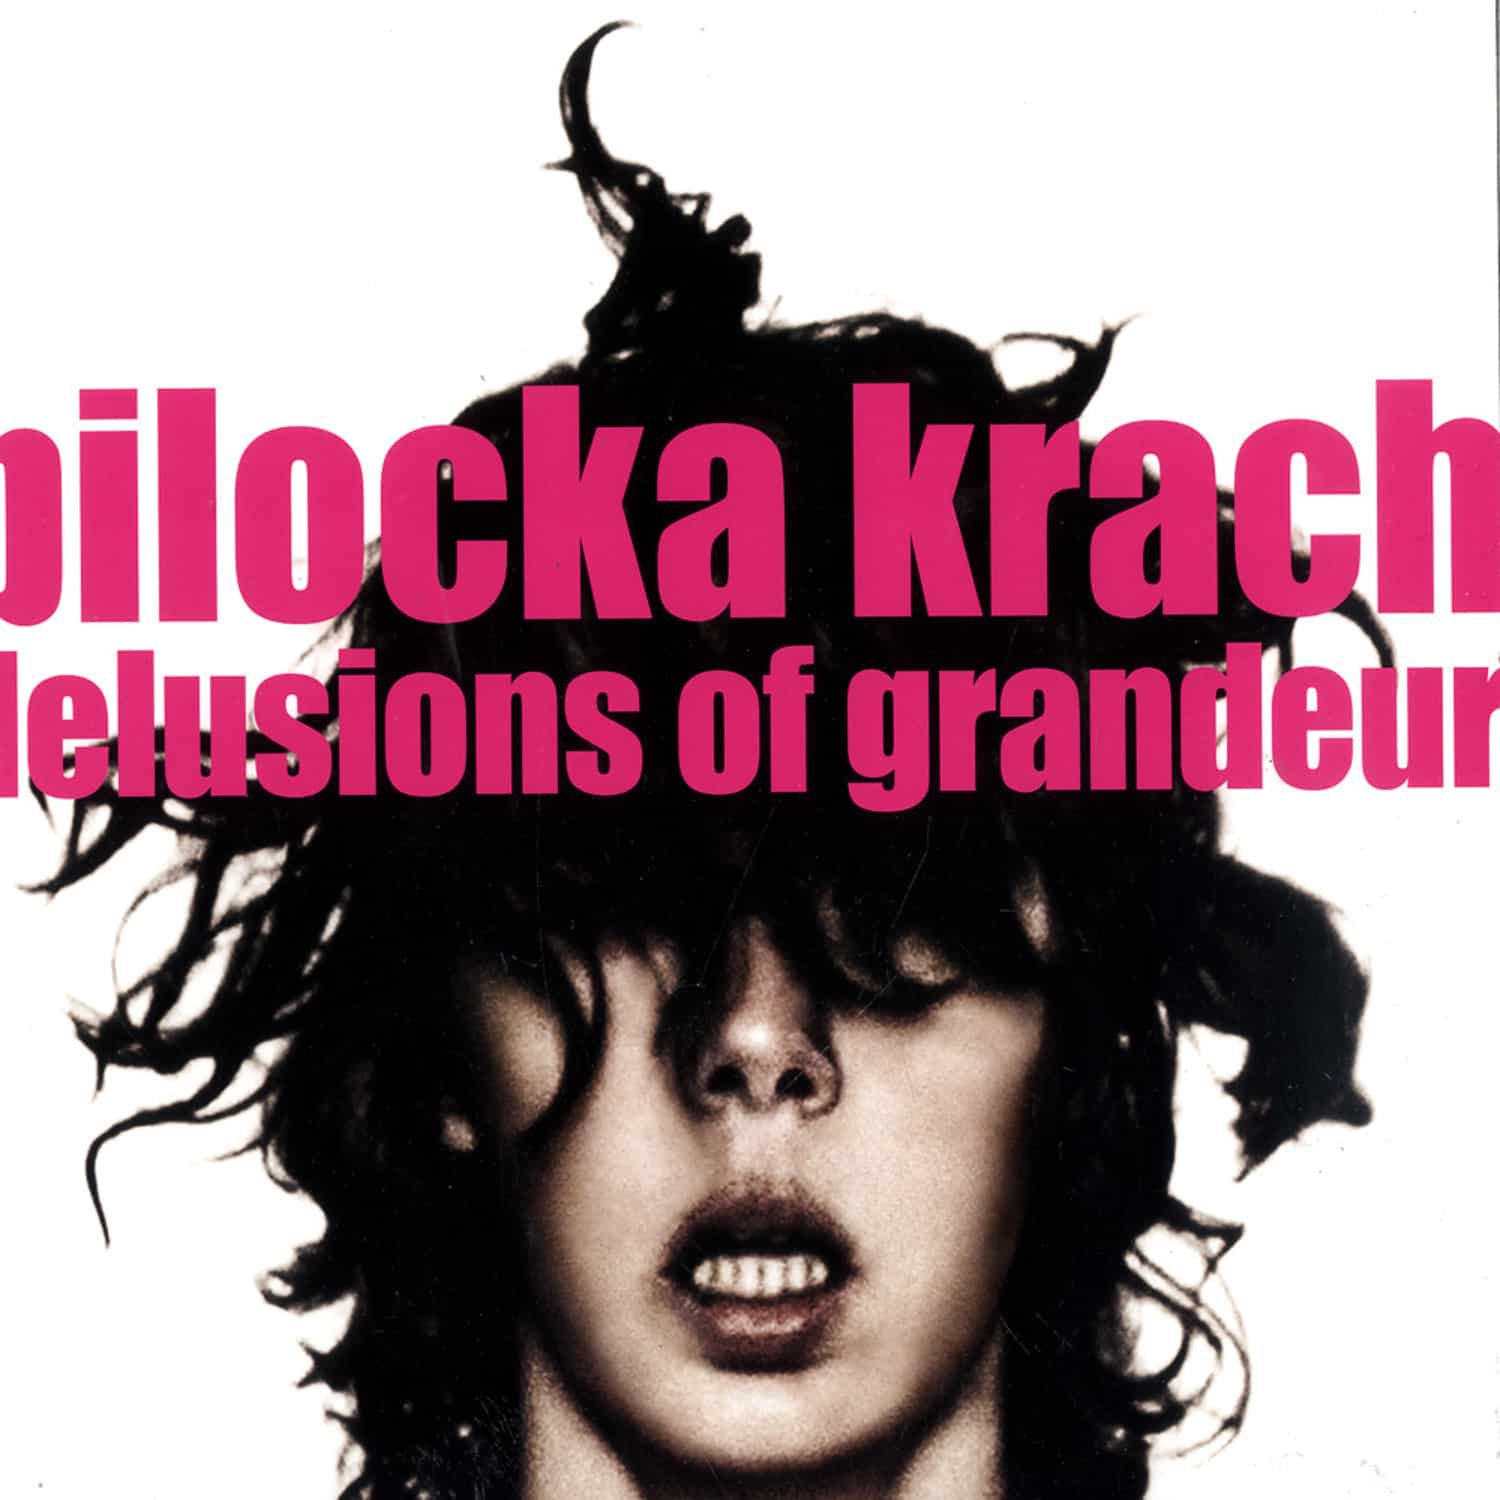 Pilocka Krach - DELUSIONS OF GRANDEUR